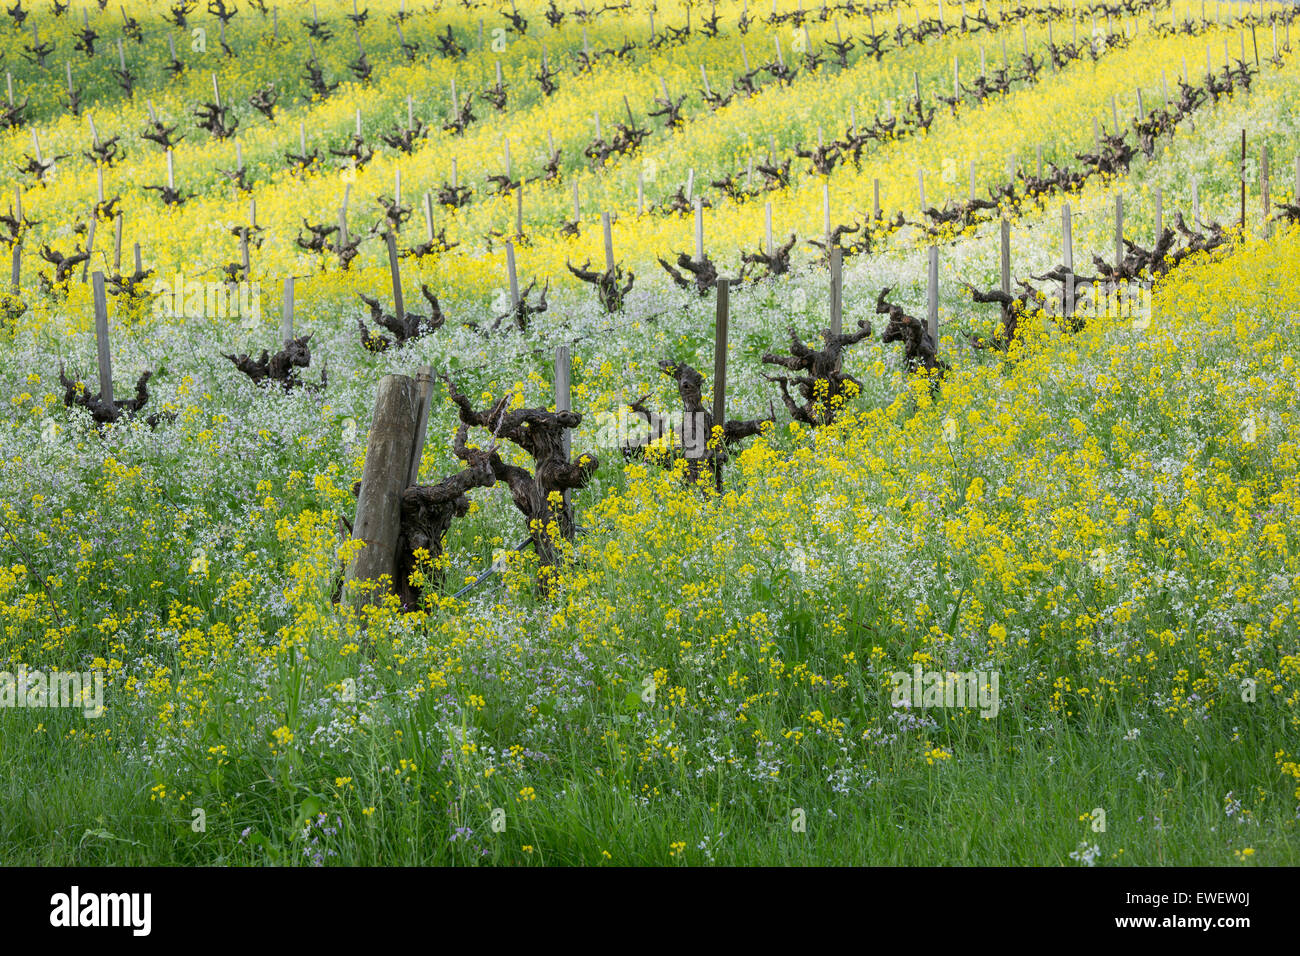 Rotazione collina nella Sonoma Valley con vecchi vitigni, fiori di senape e altri fiori selvatici, Sonoma County, California, Stati Uniti d'America Foto Stock